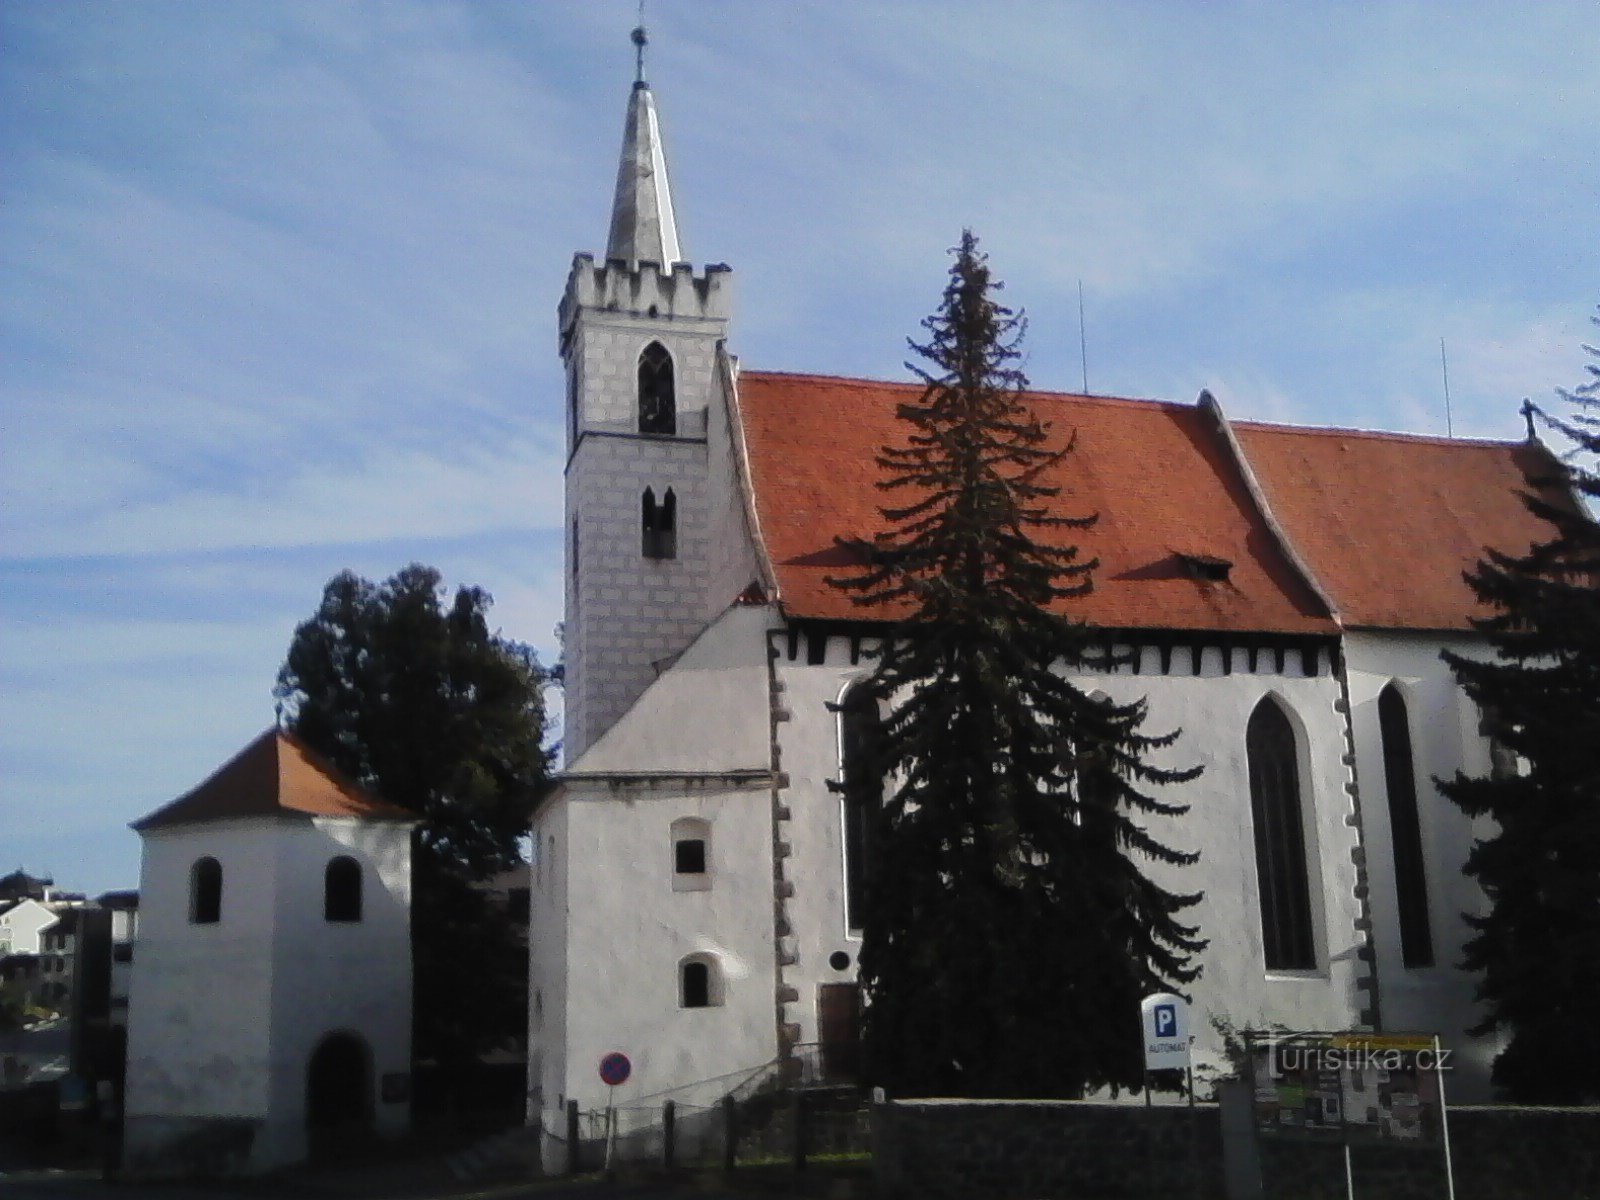 1. La iglesia de San Martín en Sedlčany está construida en estilo gótico temprano. Usuzu